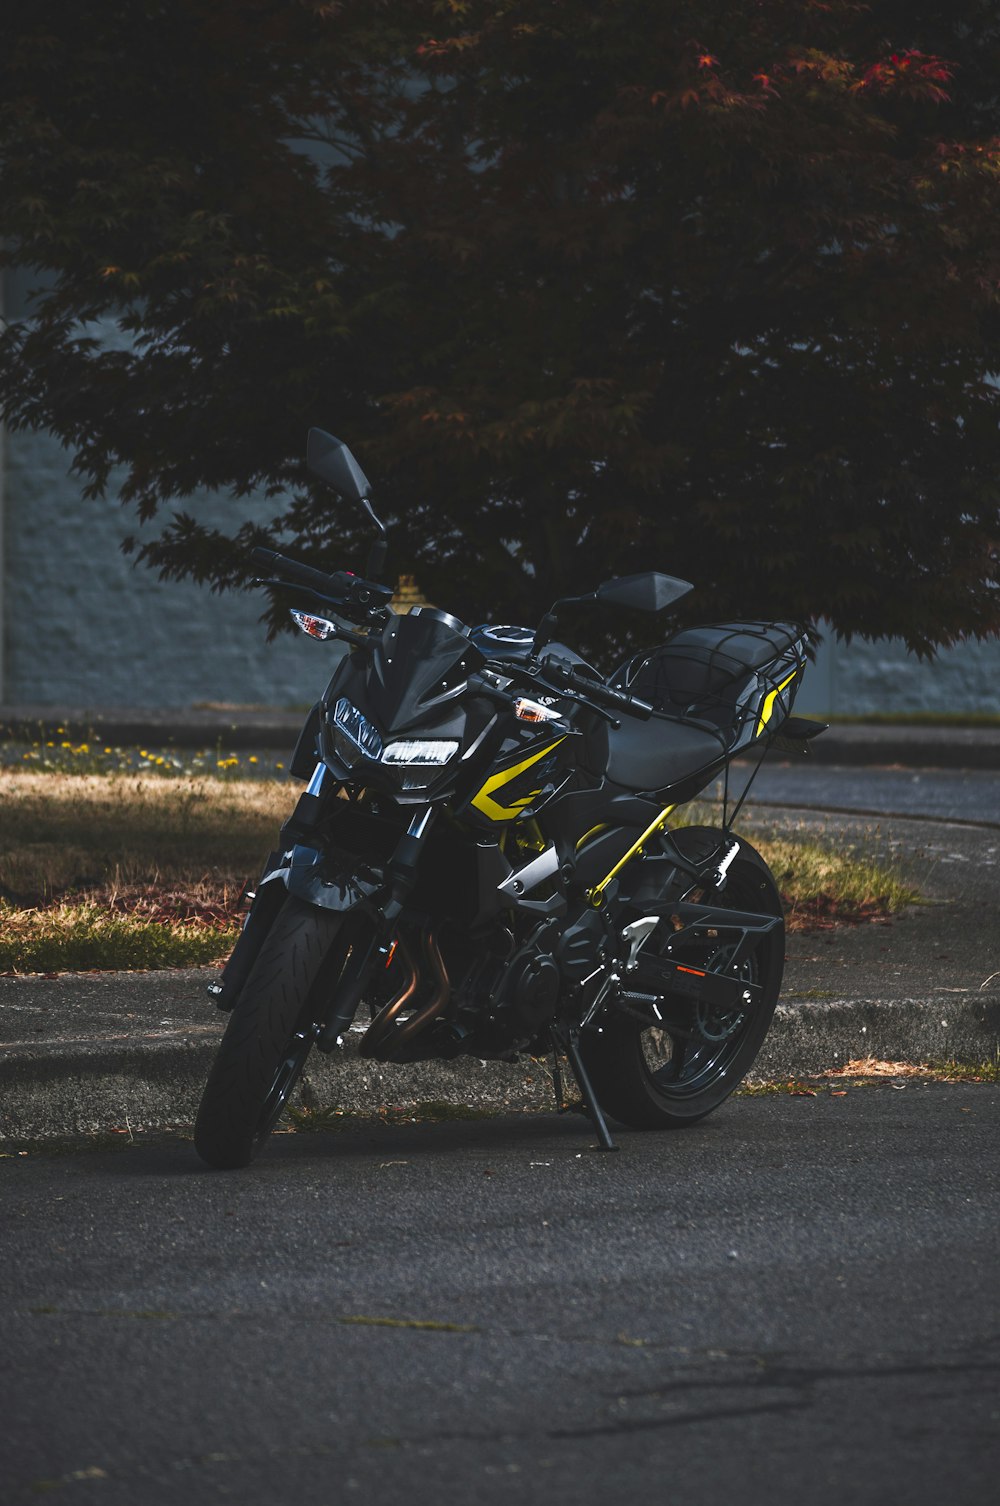 Moto noire et jaune sur la route pendant la journée